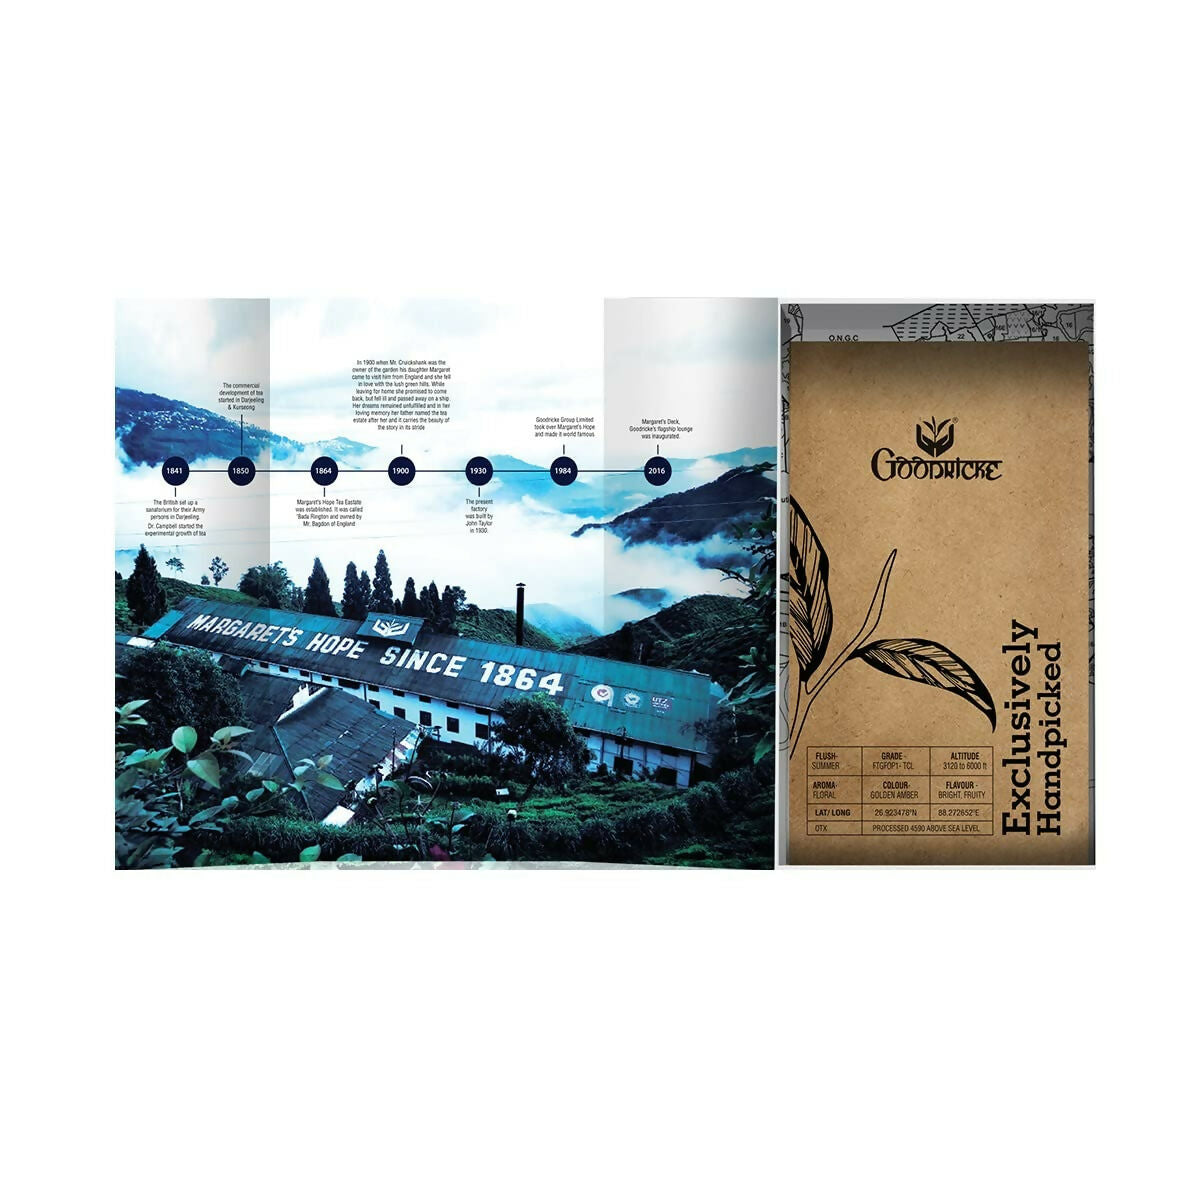 Goodricke Single Estate, Margaret’s Hope - Exclusive Darjeeling Tea - Distacart